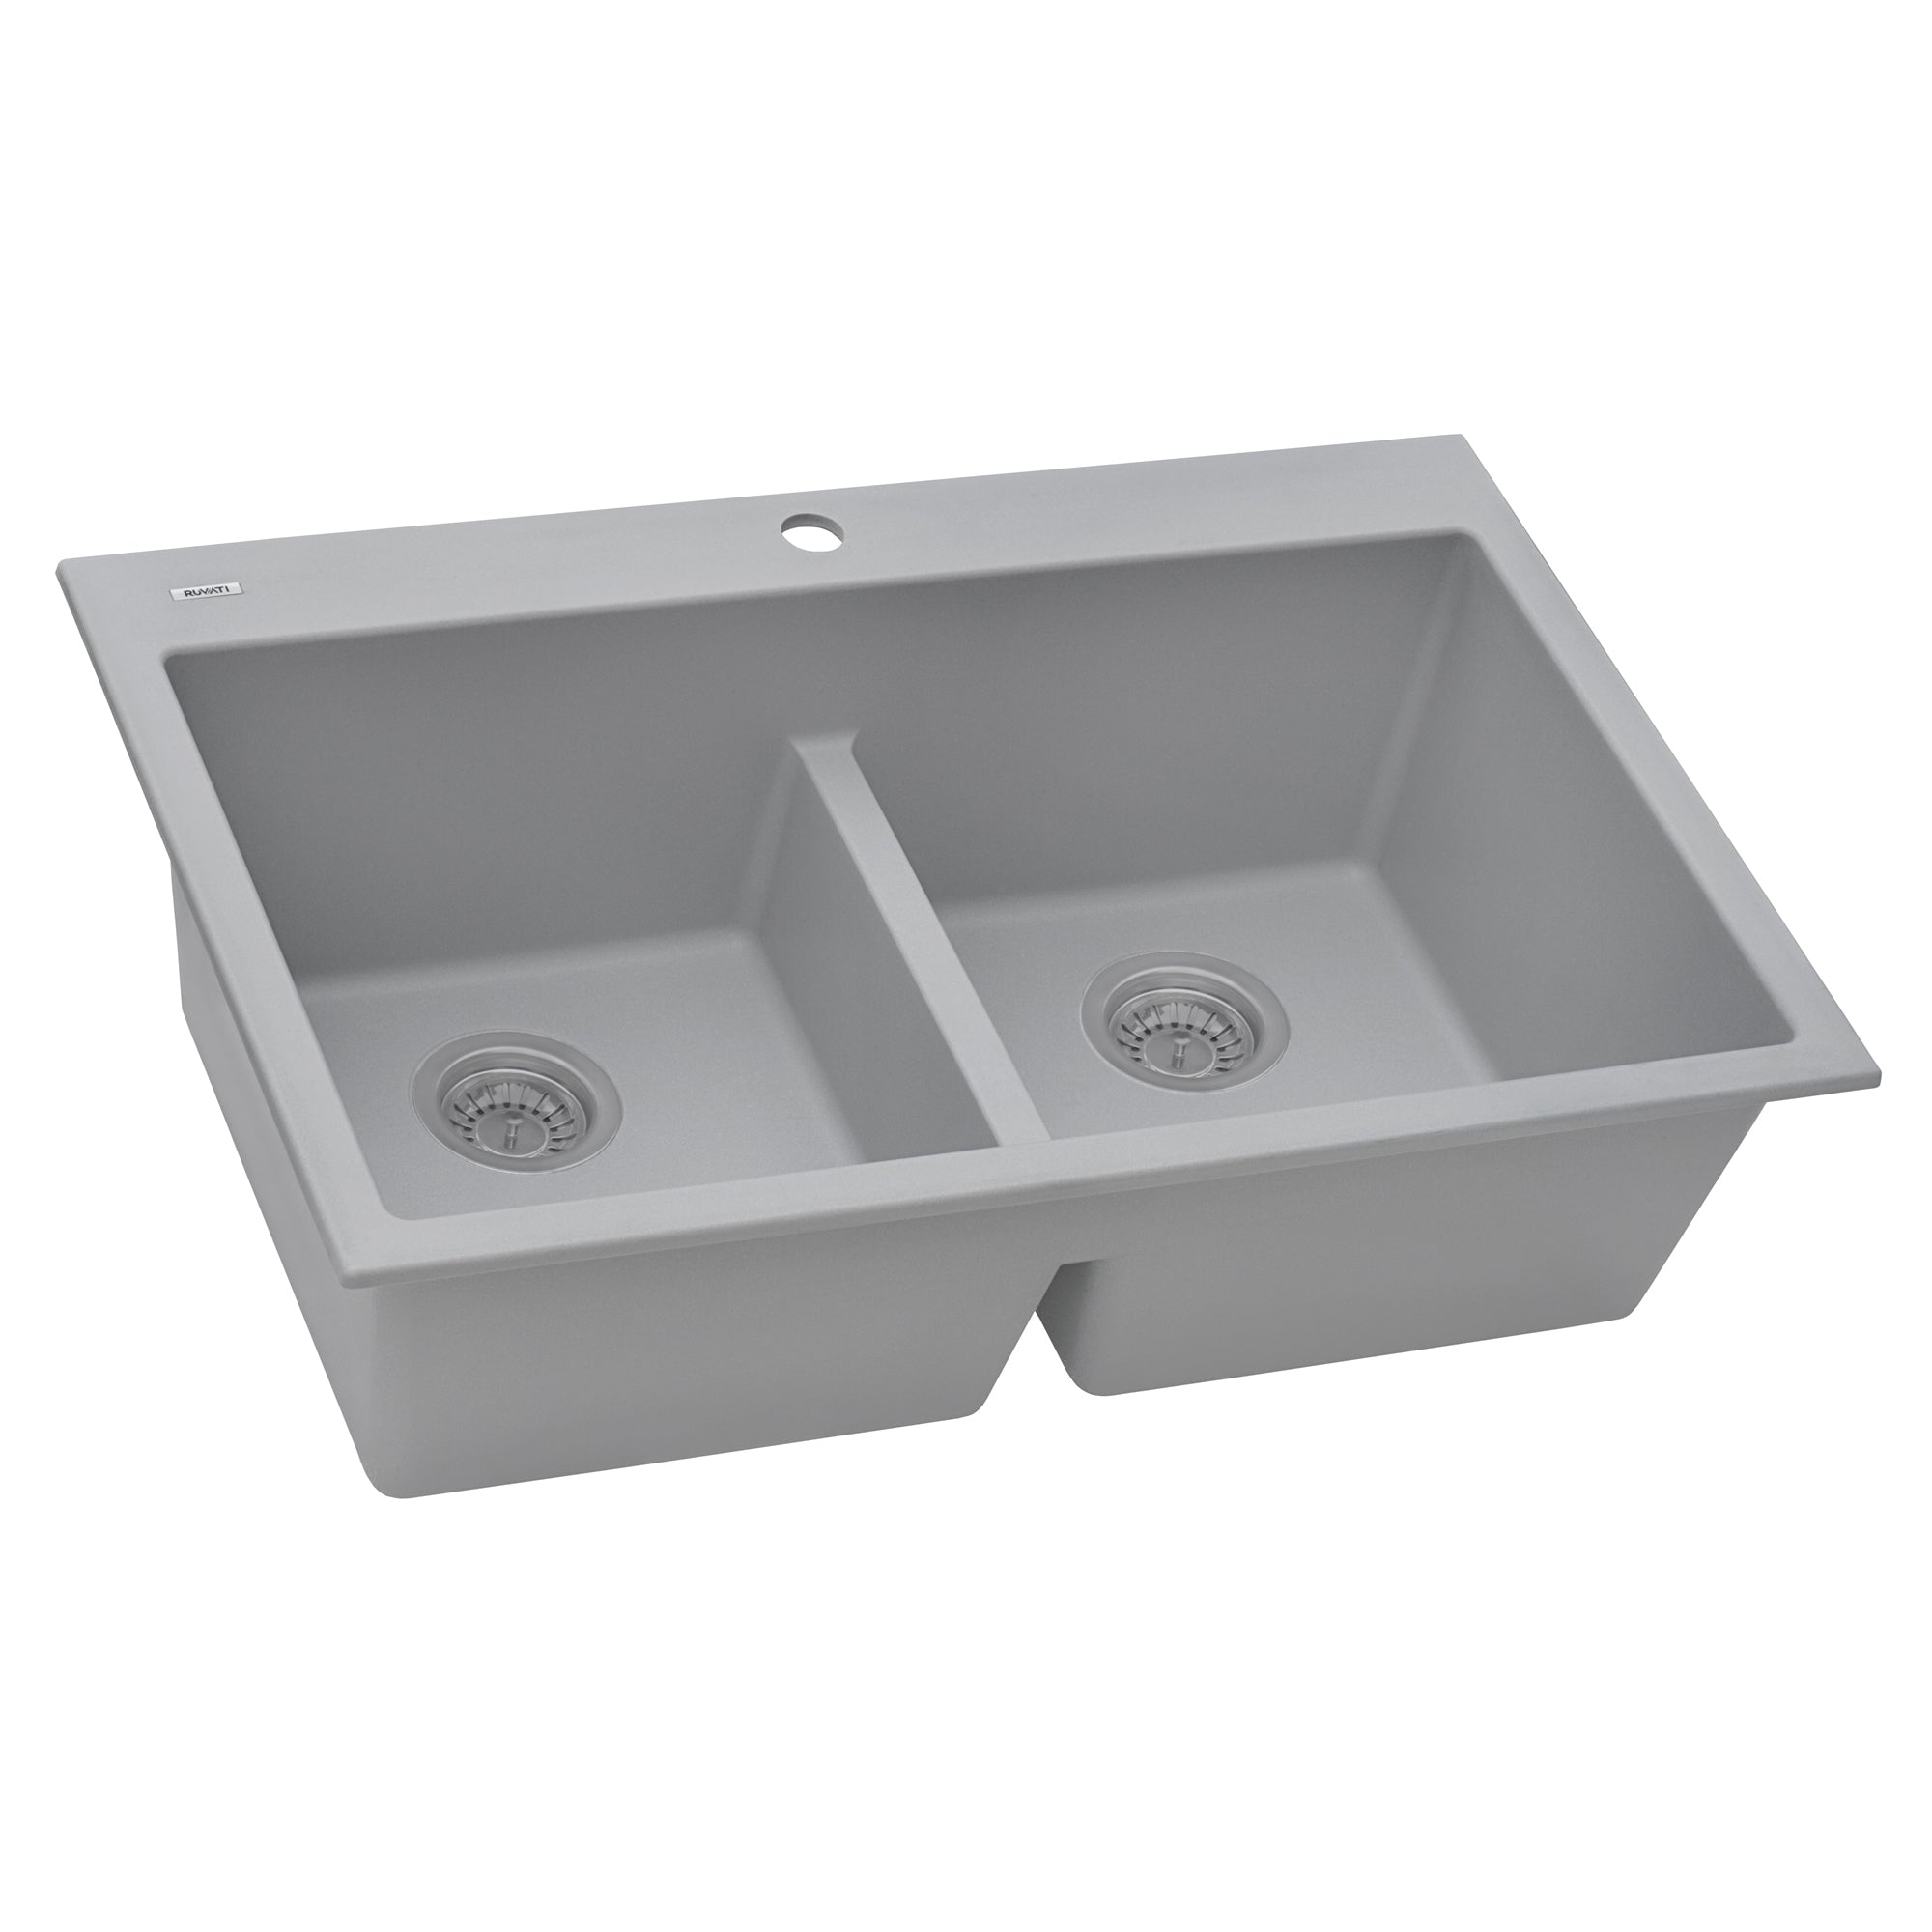 Ruvati 33 x 22" epiGranite Drop-in Topmount Granite Composite Double Bowl Low Divide Kitchen Sink